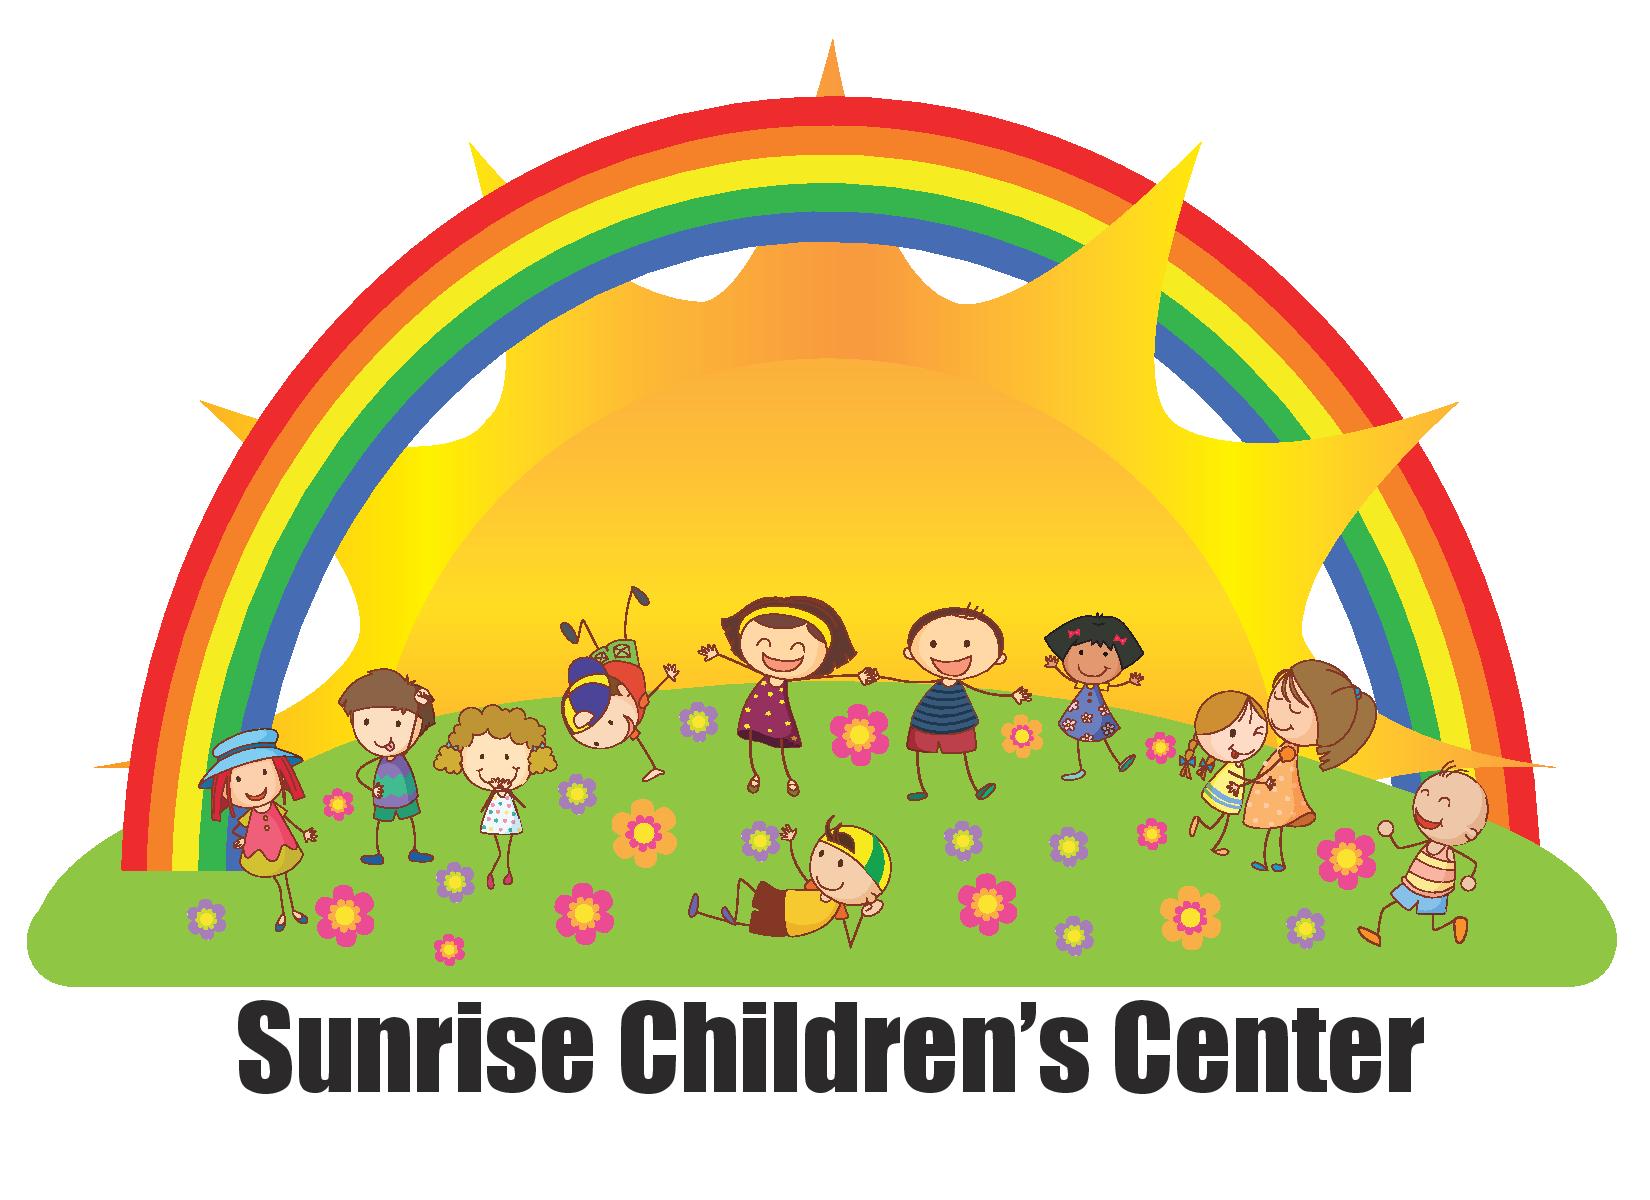 SUNRISE CHILDREN'S CENTER